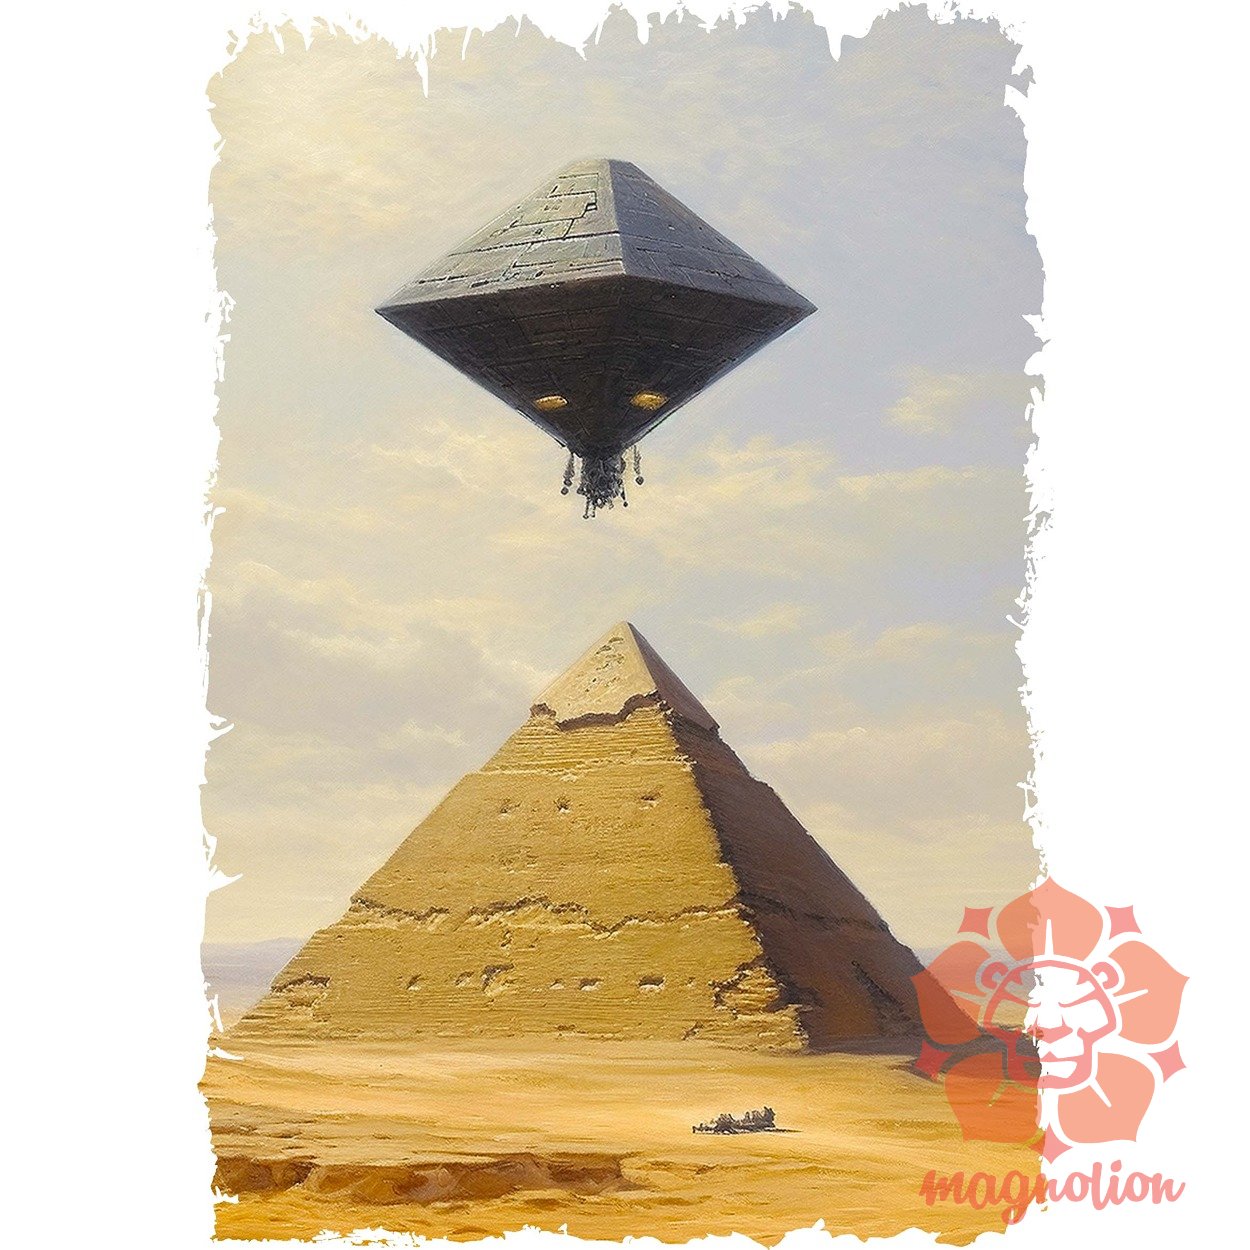 Gízai nagy piramis és ősi idegenek v1